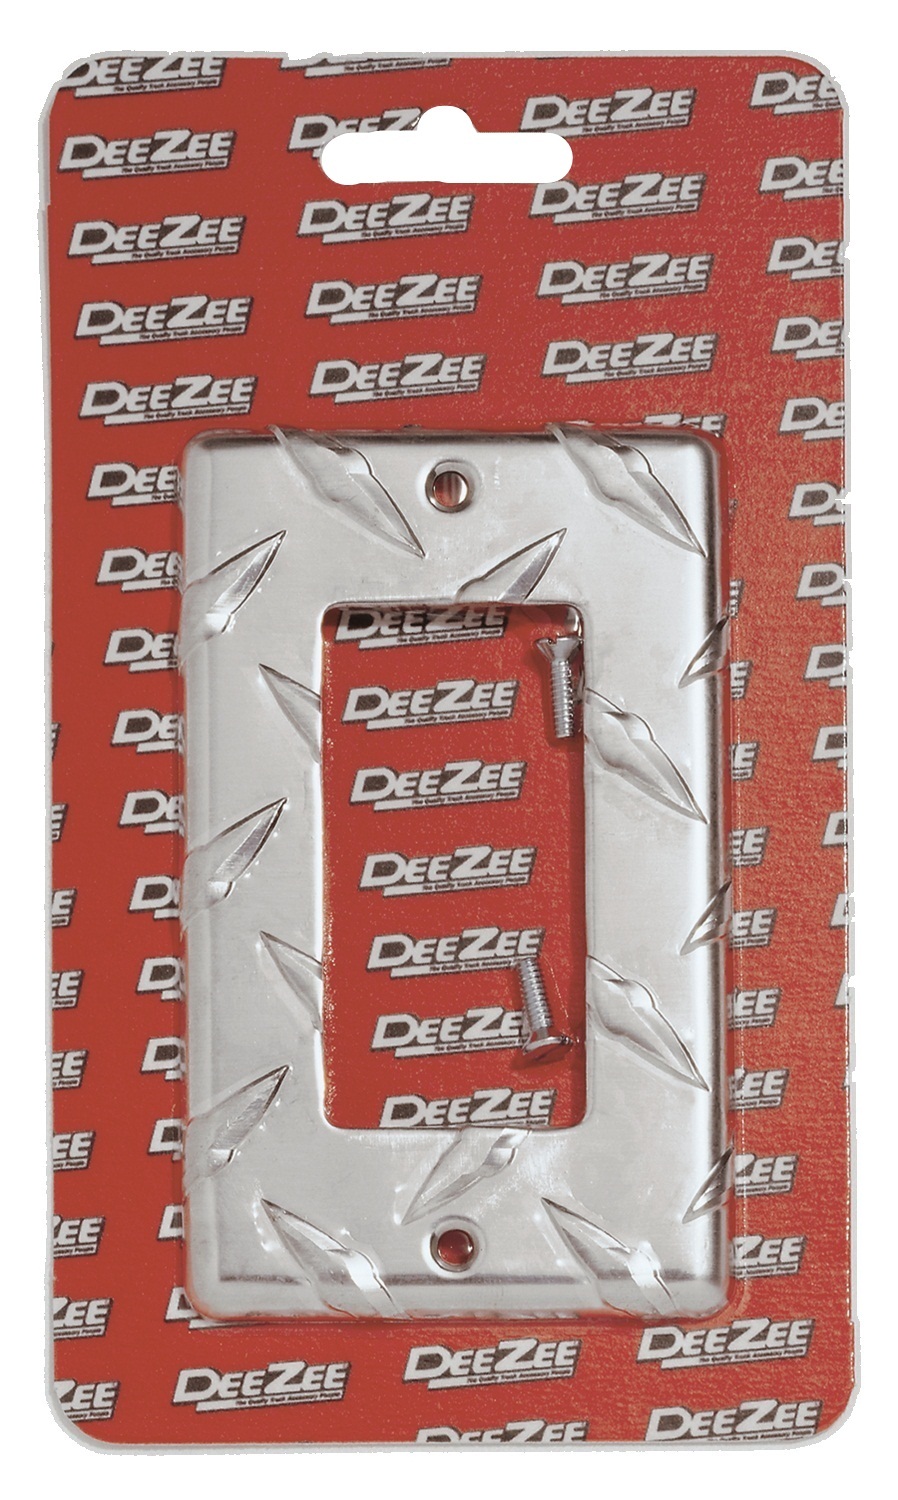 Dee Zee Dee Zee DZ40002 Brite-Tread; GFI Outlet Cover